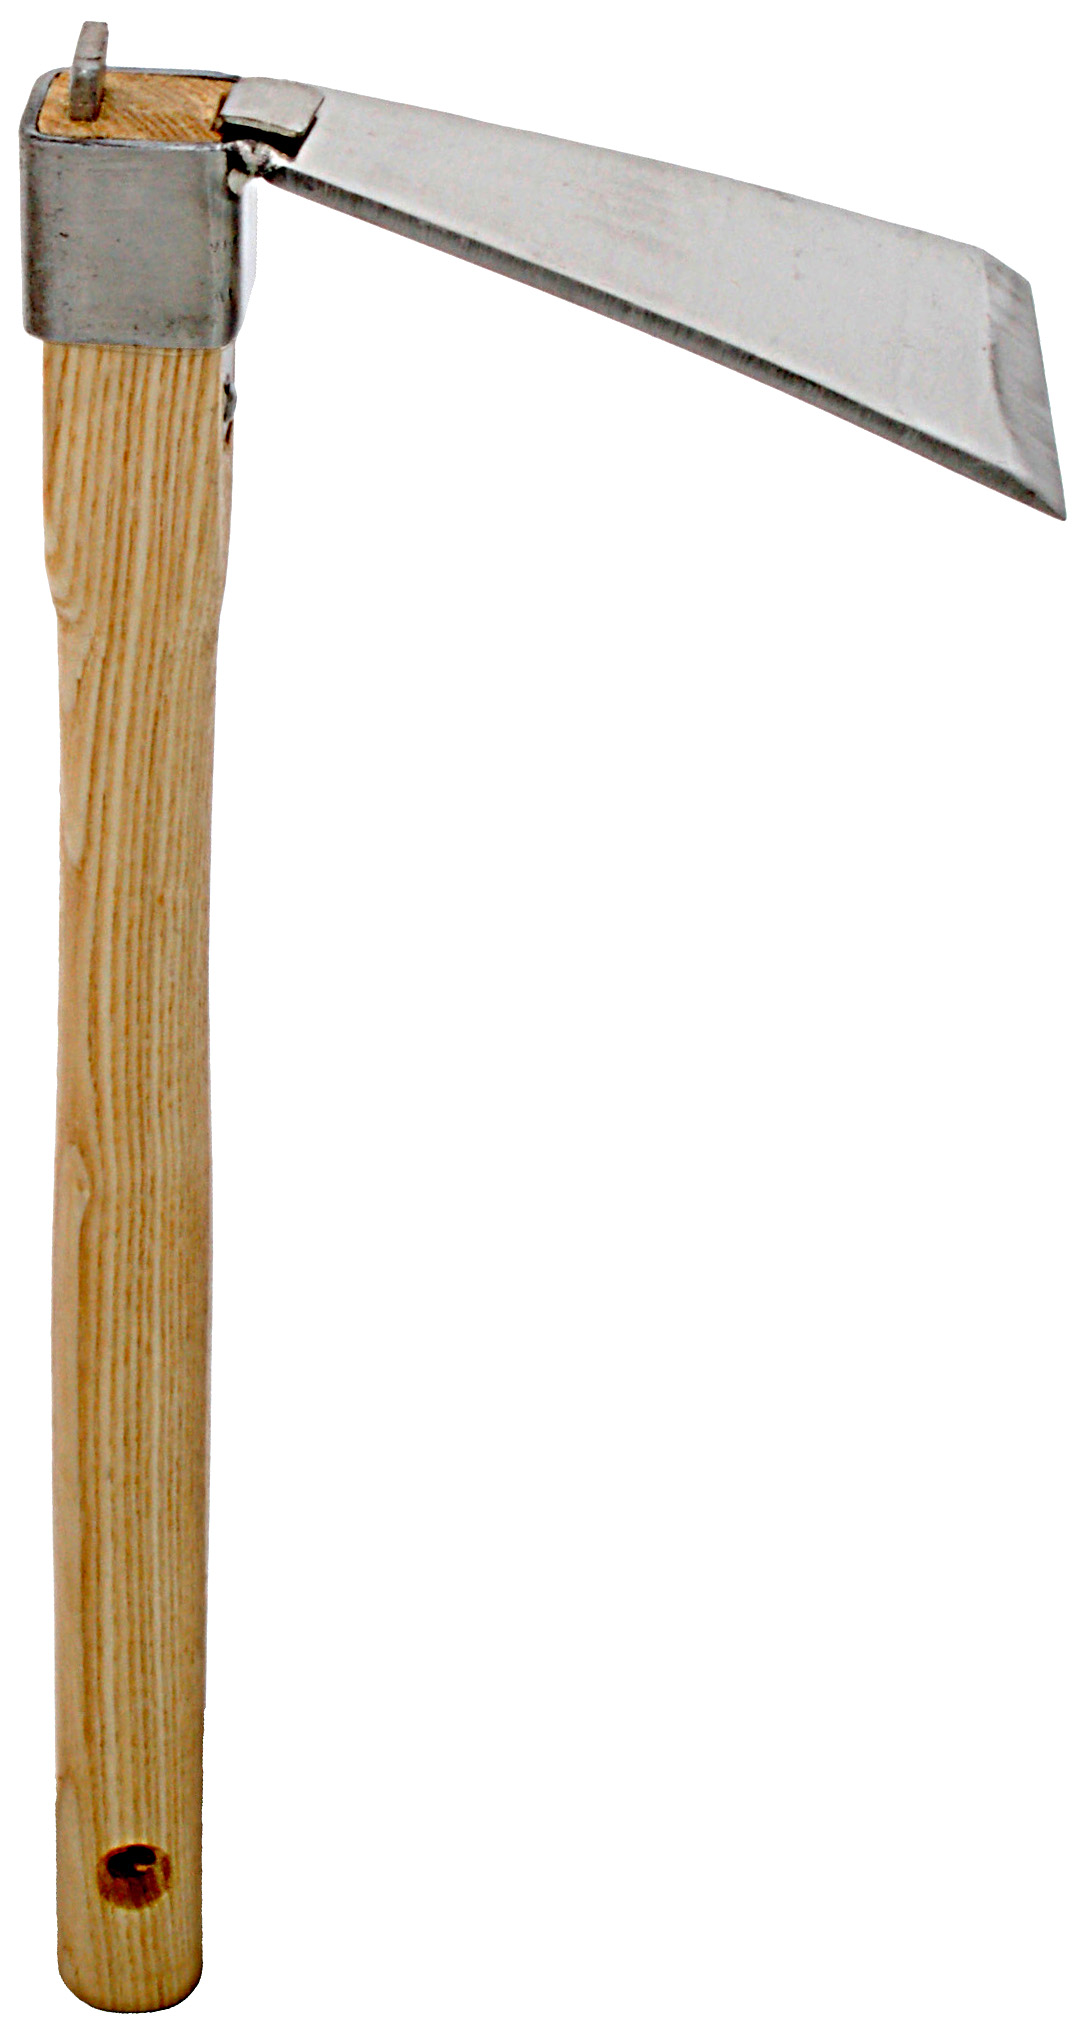 Zenport Garden Hoe J602 Hoe 5-Inch By 3.25-Inch Stainless Steel Blade Head